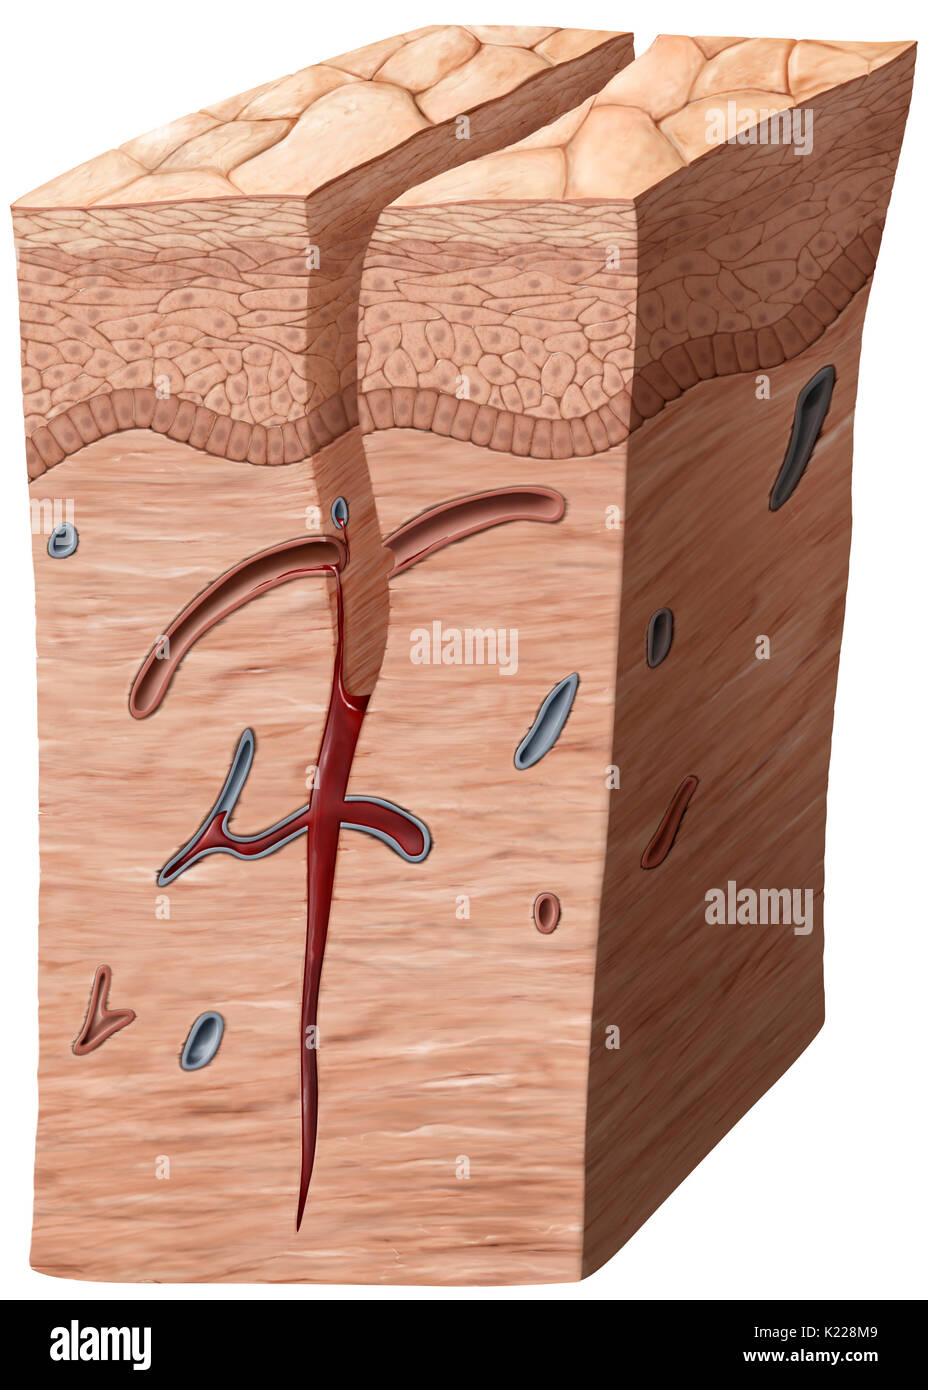 Lorsqu'une blessure atteint jusqu'au derme, les capillaires dans les éclater, causant une hémorragie. Un caillot sanguin se forme dans la partie inférieure de la plaie. Banque D'Images